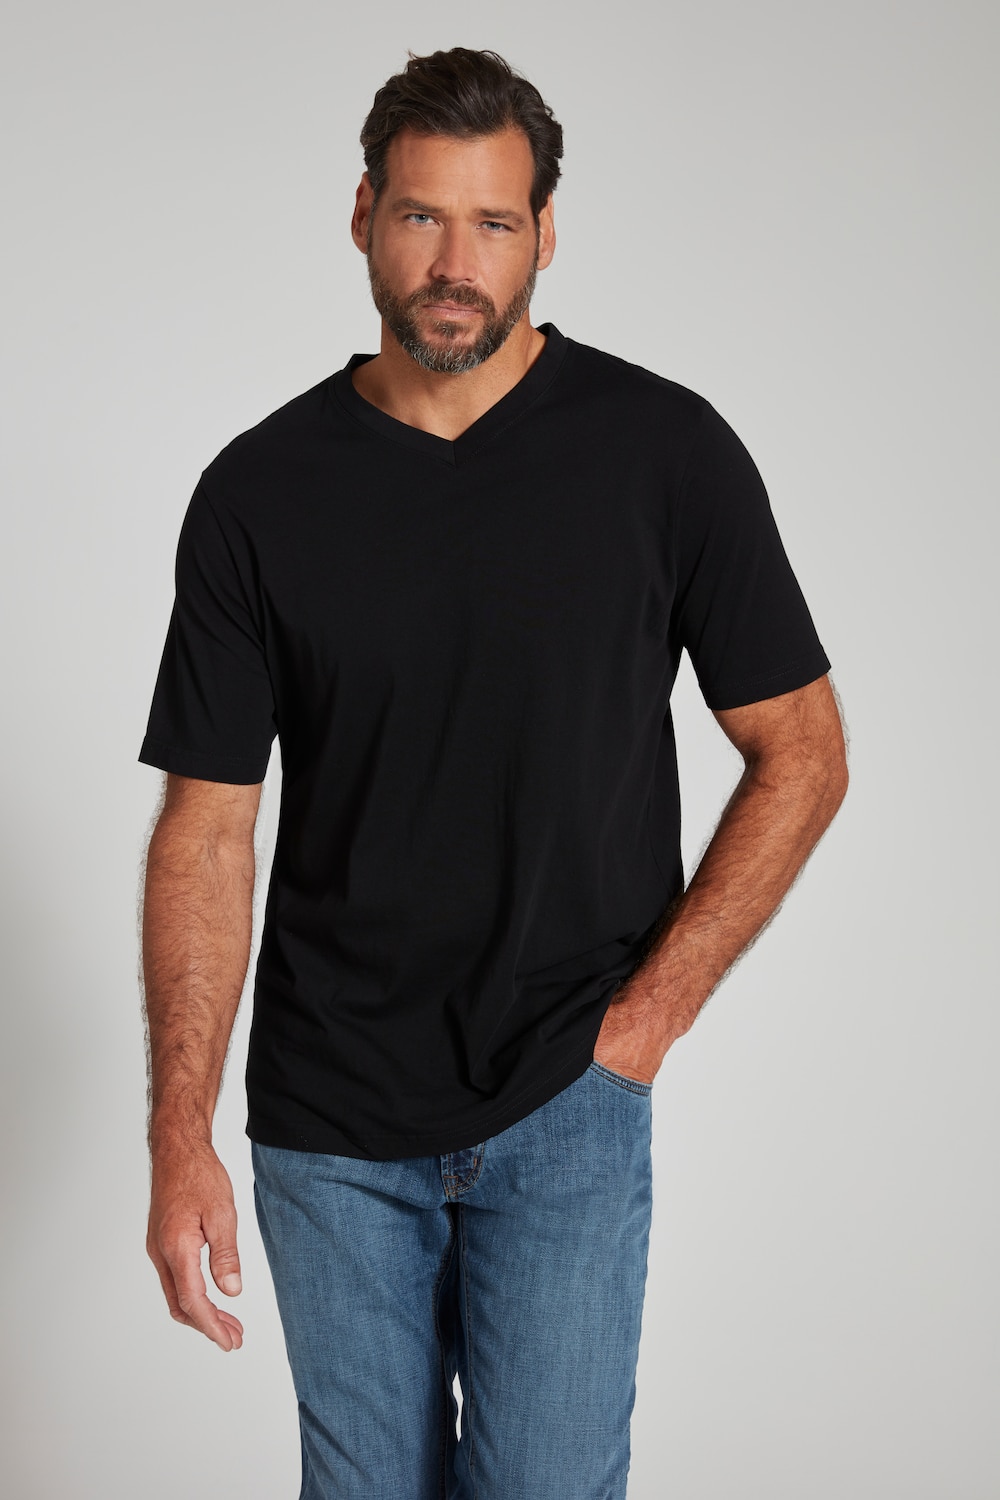 Große Größen T-Shirt, Herren, schwarz, Größe: XL, Baumwolle/Polyester, JP1880 von JP1880